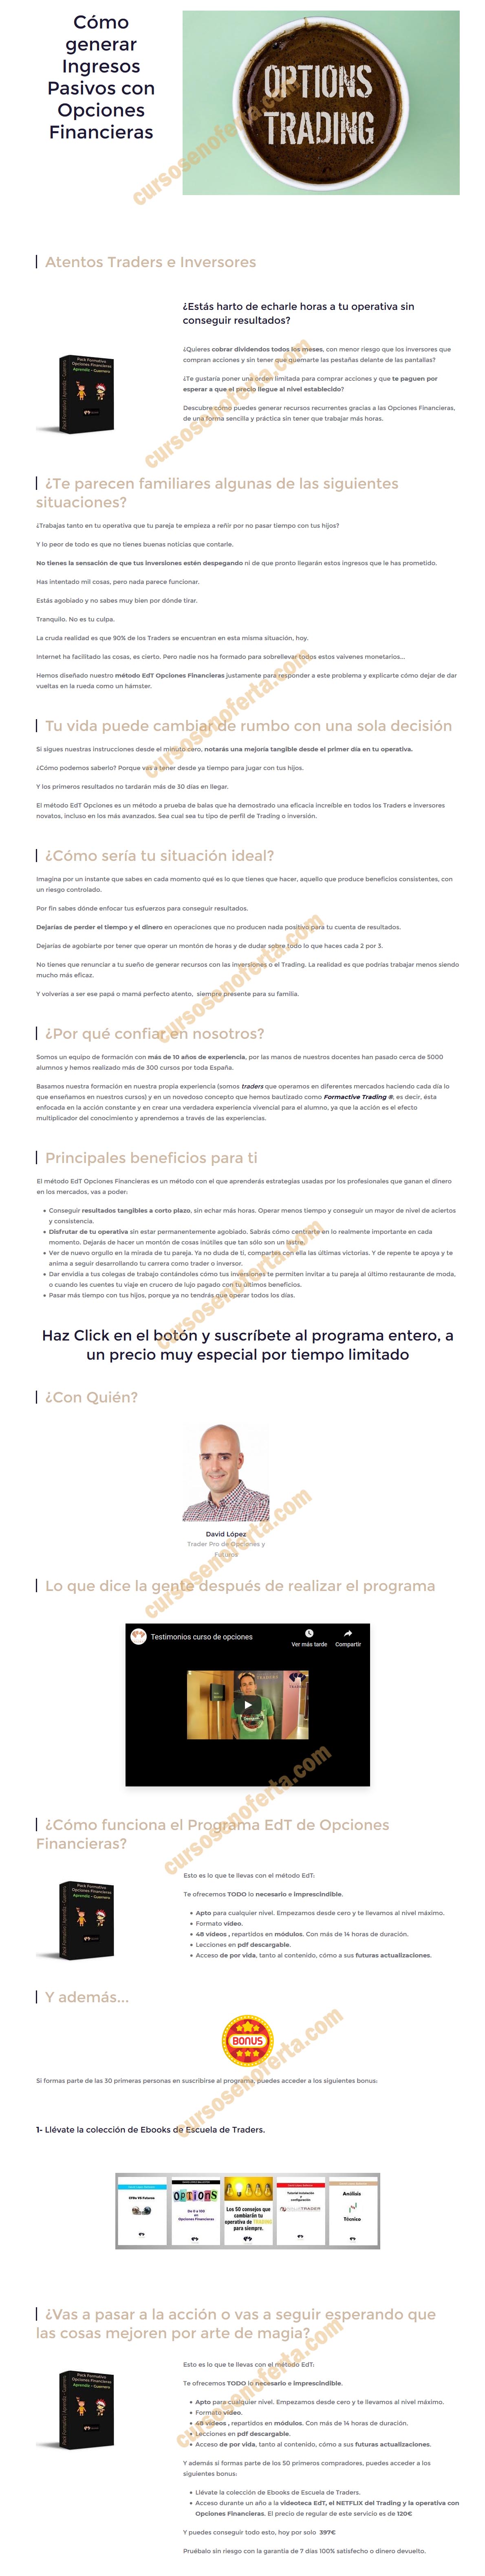 Pack Formativo Opciones Financieras Aprendiz-Guerrero